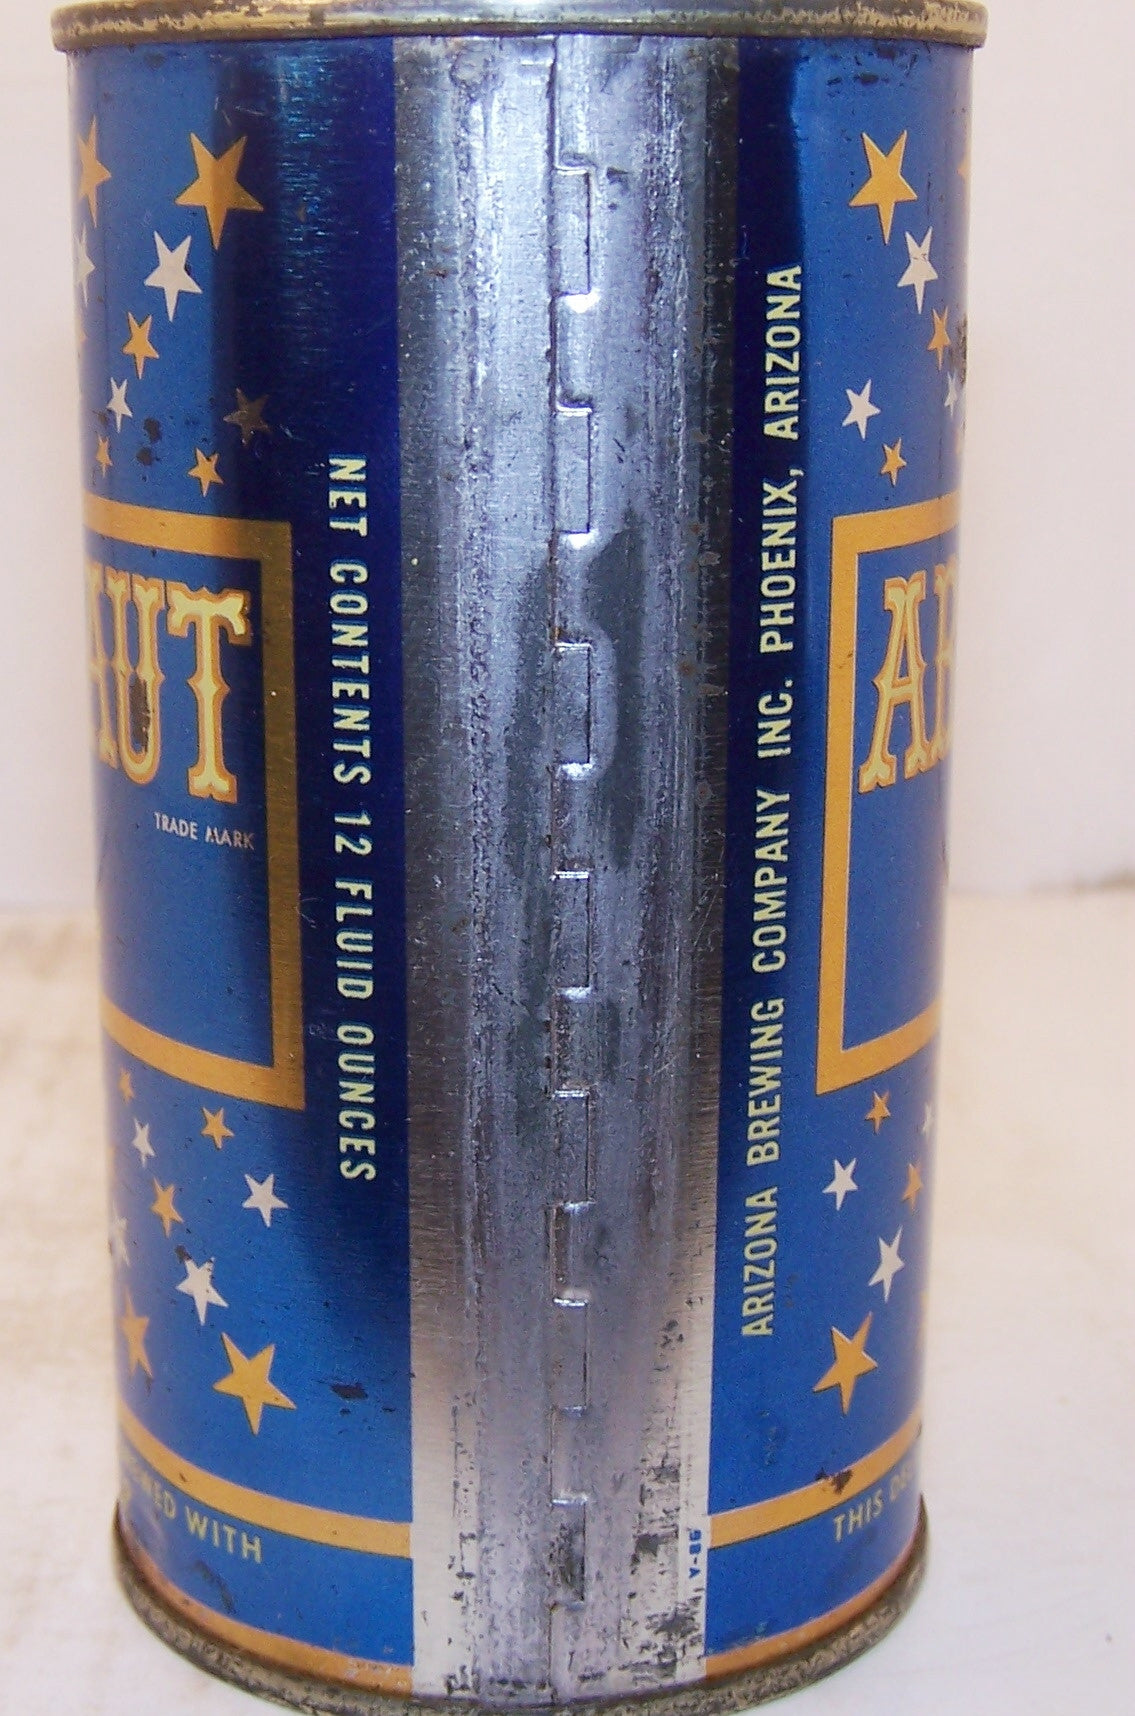 Argonaut the light beer, USBC 31-36, Grade 1- traded on 02/27/16